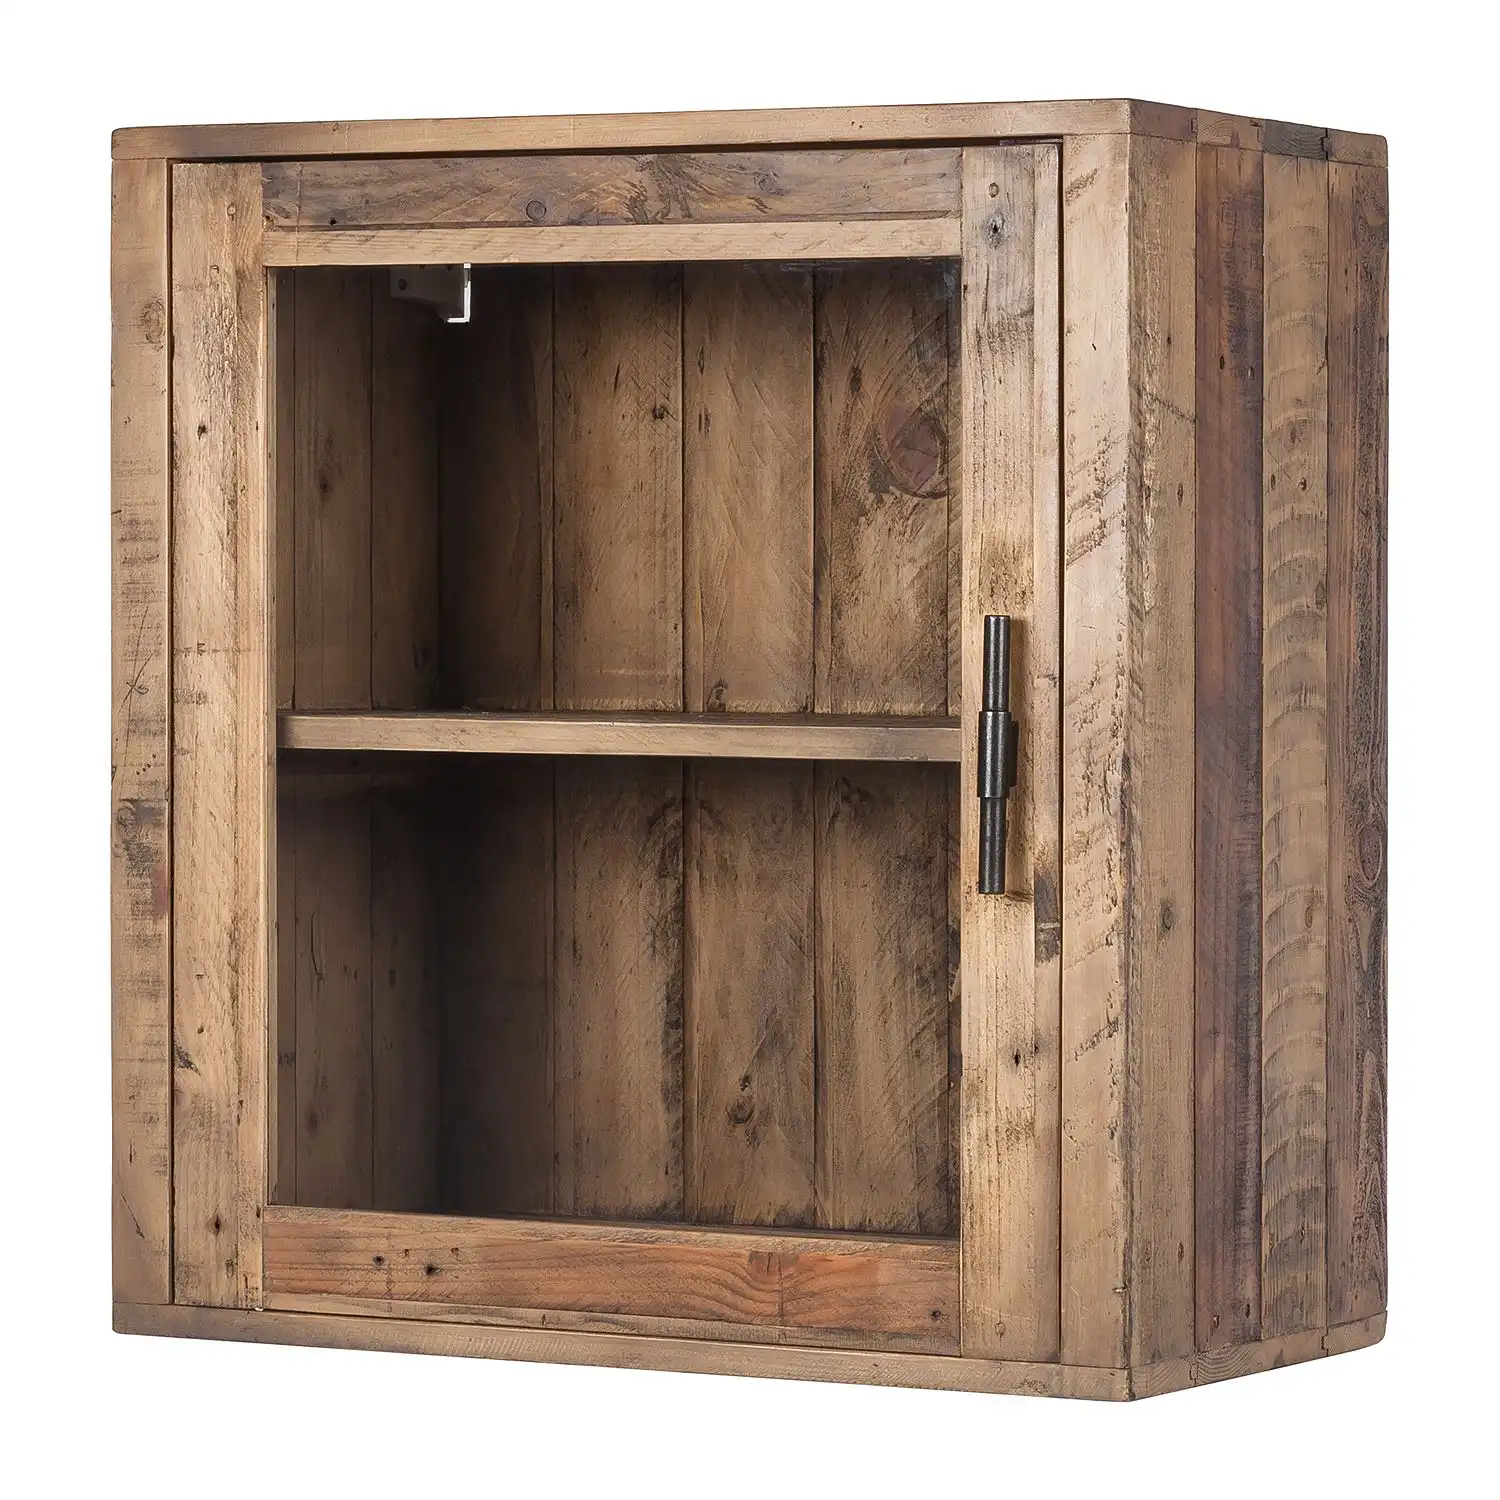 Reclaimed Wood Hanging cabinet with 1 glass door - popular handicrafts